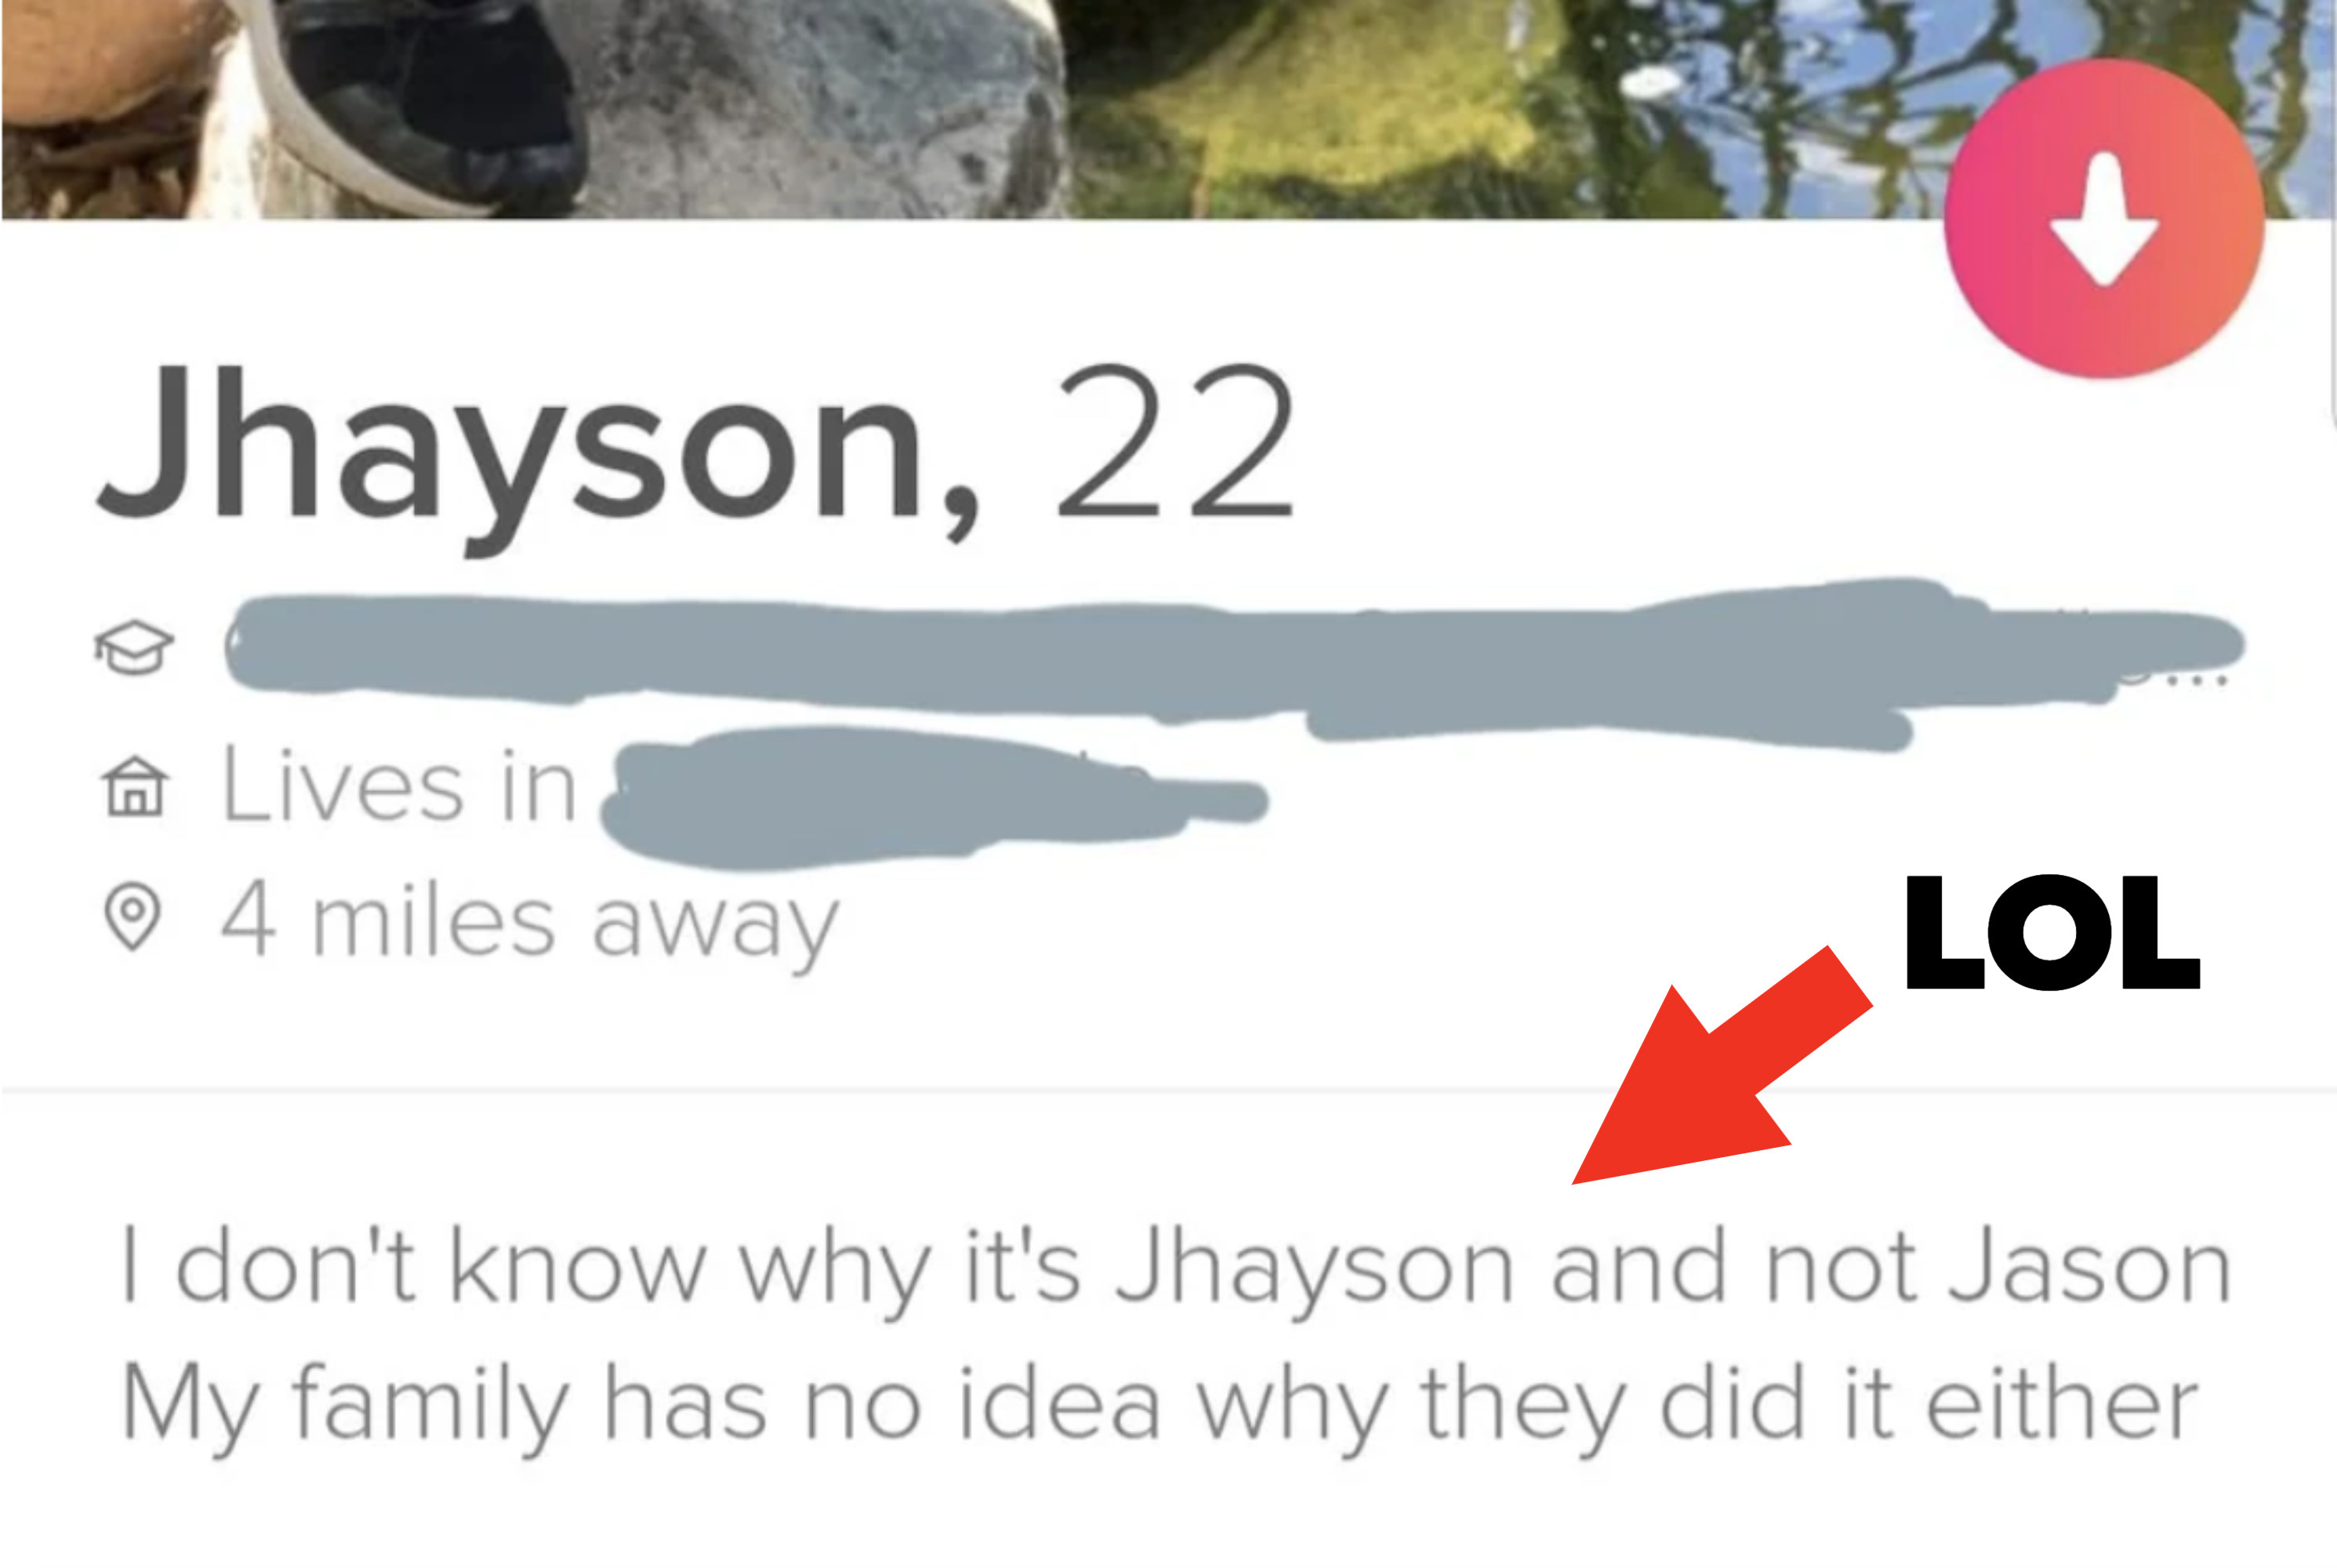 &quot;I don&#x27;t know why it&#x27;s Jhayson and not Jason.&quot;